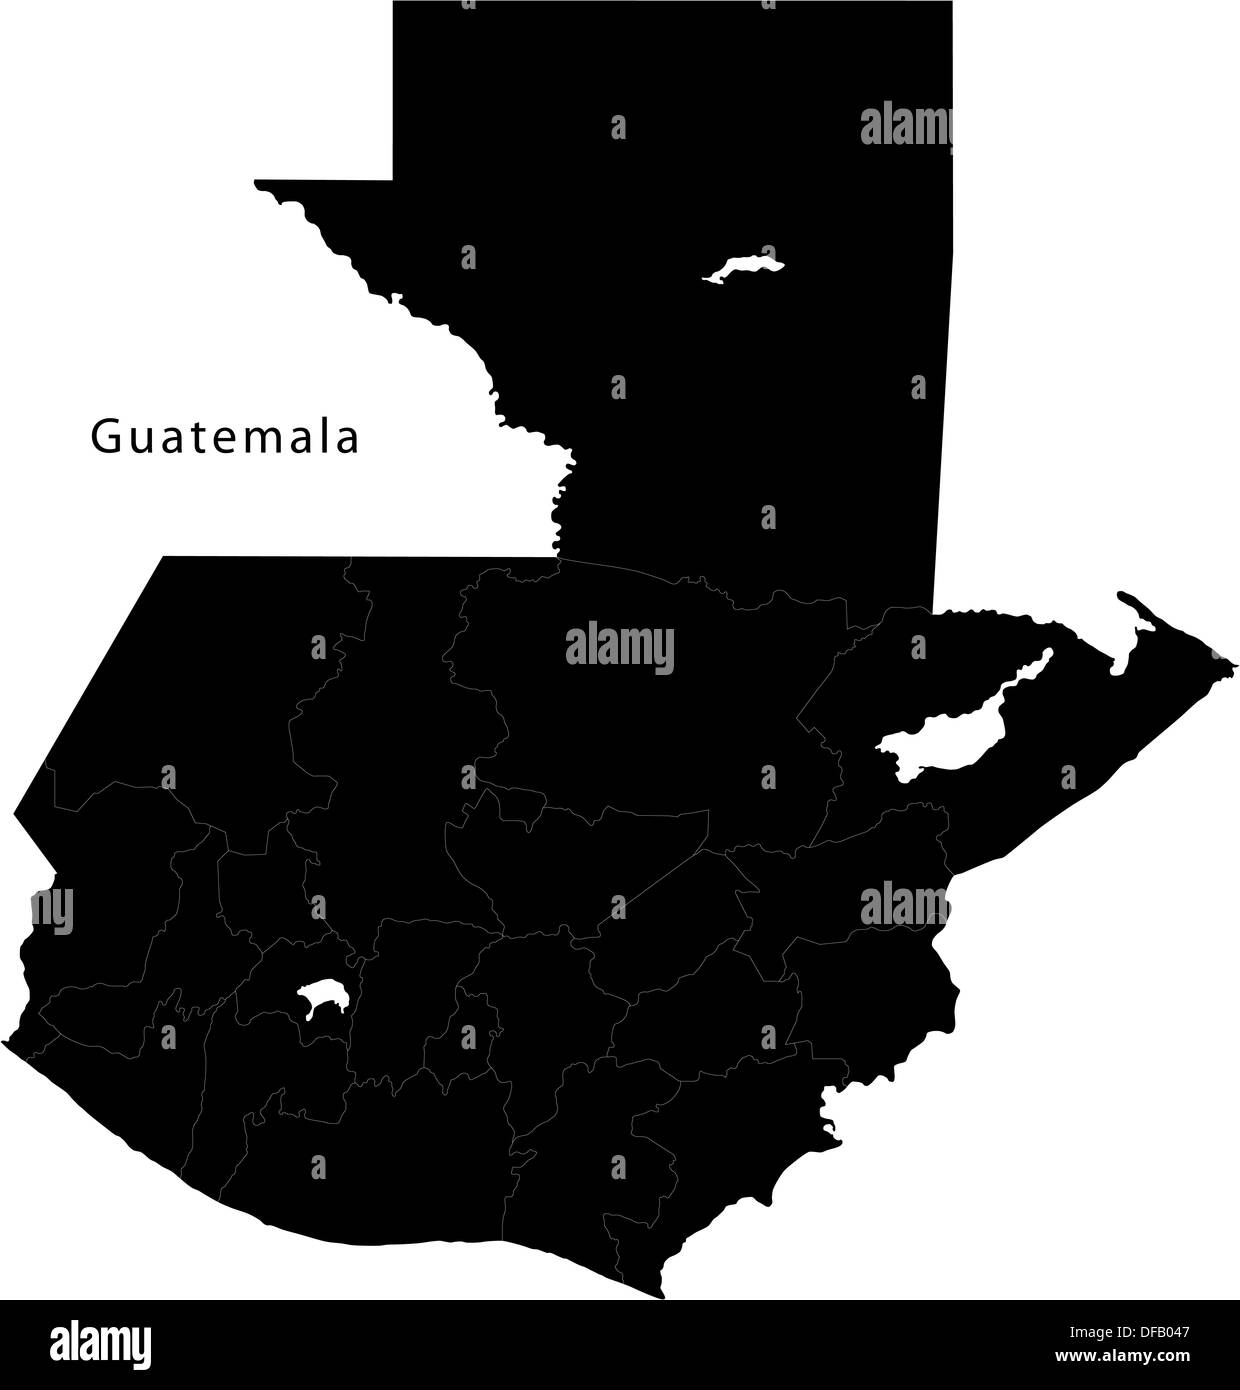 Black Guatemala map Stock Photo